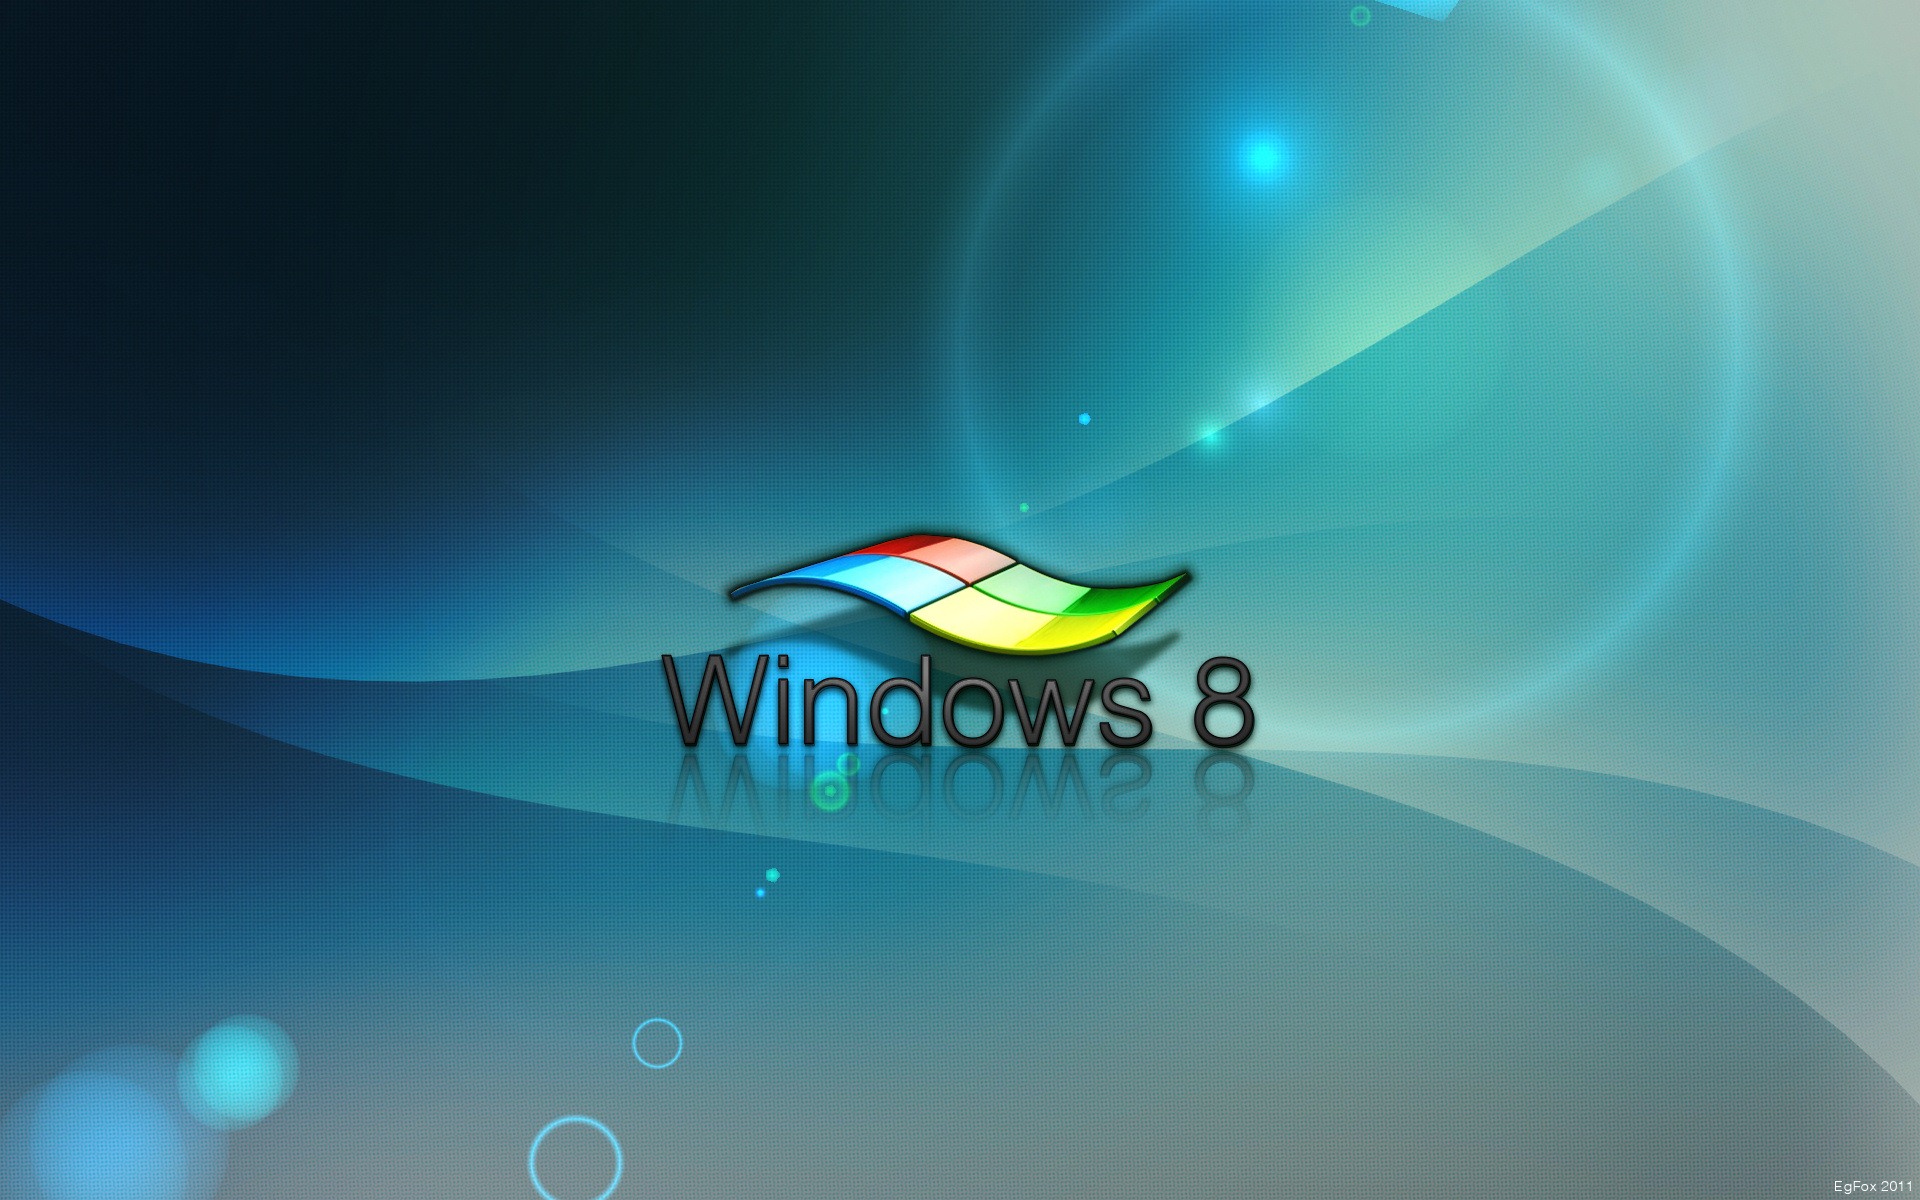 Windows 8 theme wallpaper (1) #16 - 1920x1200